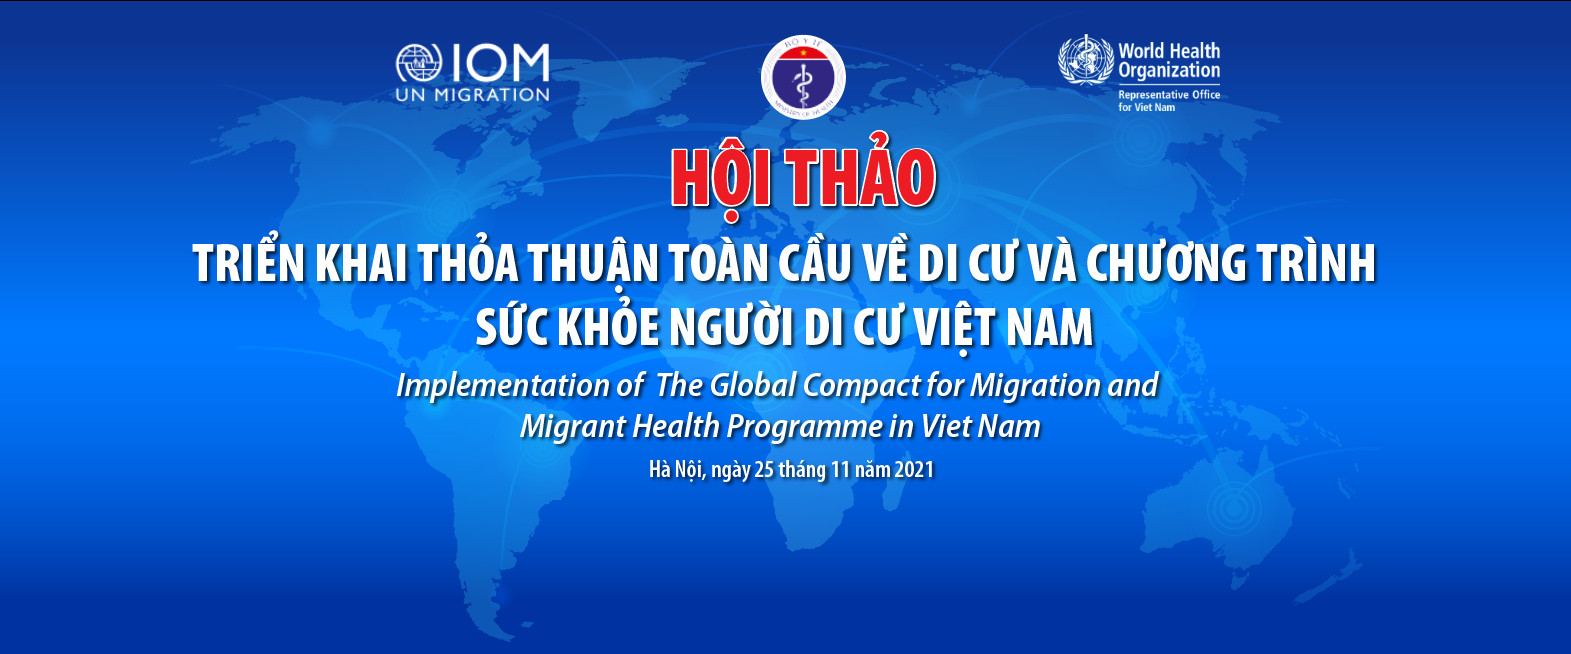 Hội thảo triển khai thỏa thuận toàn cầu về di cư và Chương trình Sức khỏe người di cư Việt Nam ngày 25/11/2021